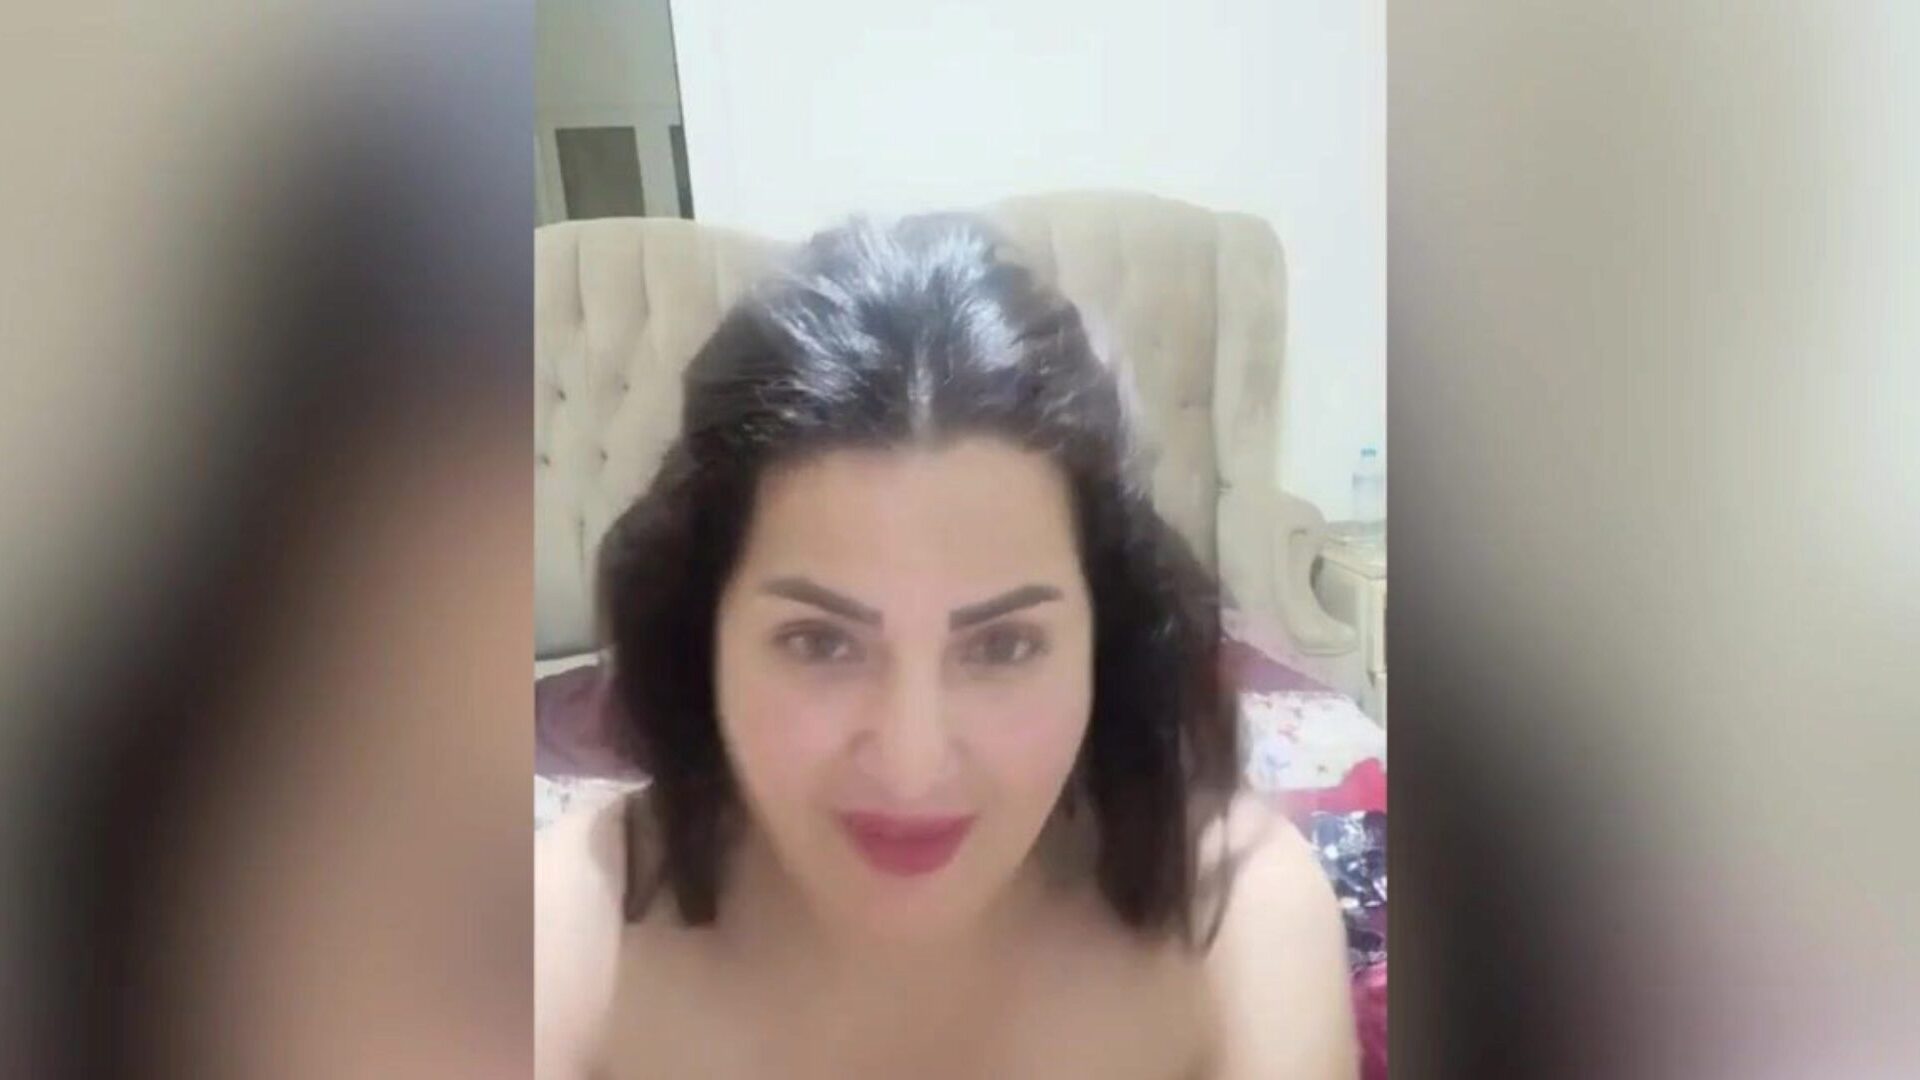 actriz árabe egipcia fuck-a-thon sama el masry hot masrya naar orgía árabe egipcia por sama al-masry, que es hawt asaaa, mostrando sus grandes bazucas y hawt gran gazoo masrya naar